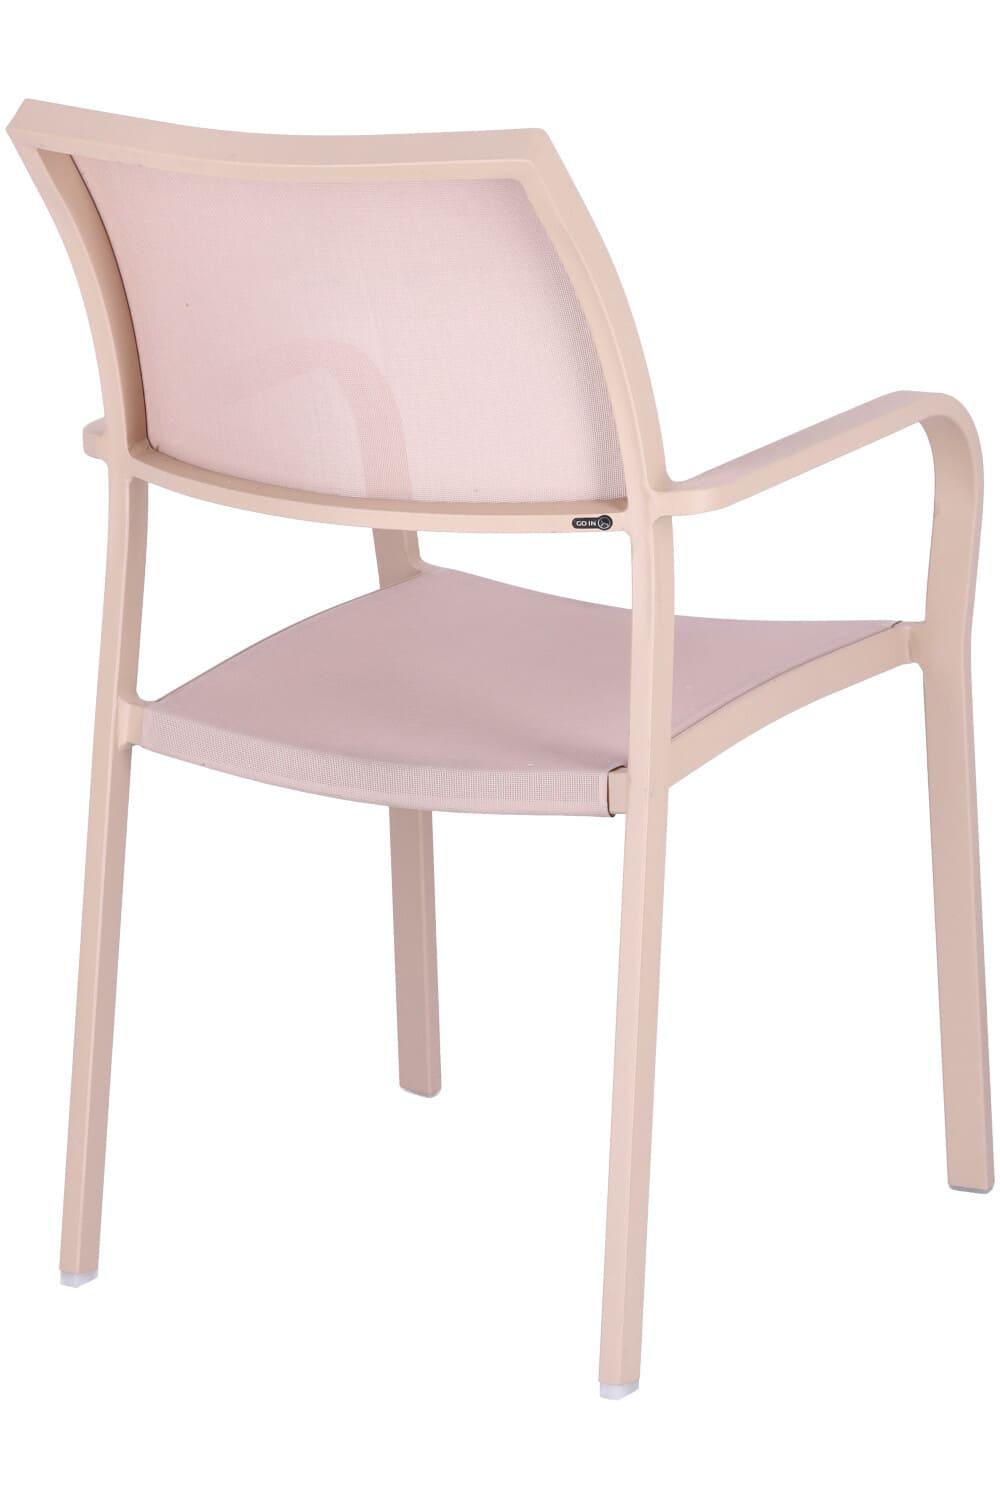 Abbildung arm chair Alexis Schrägansicht